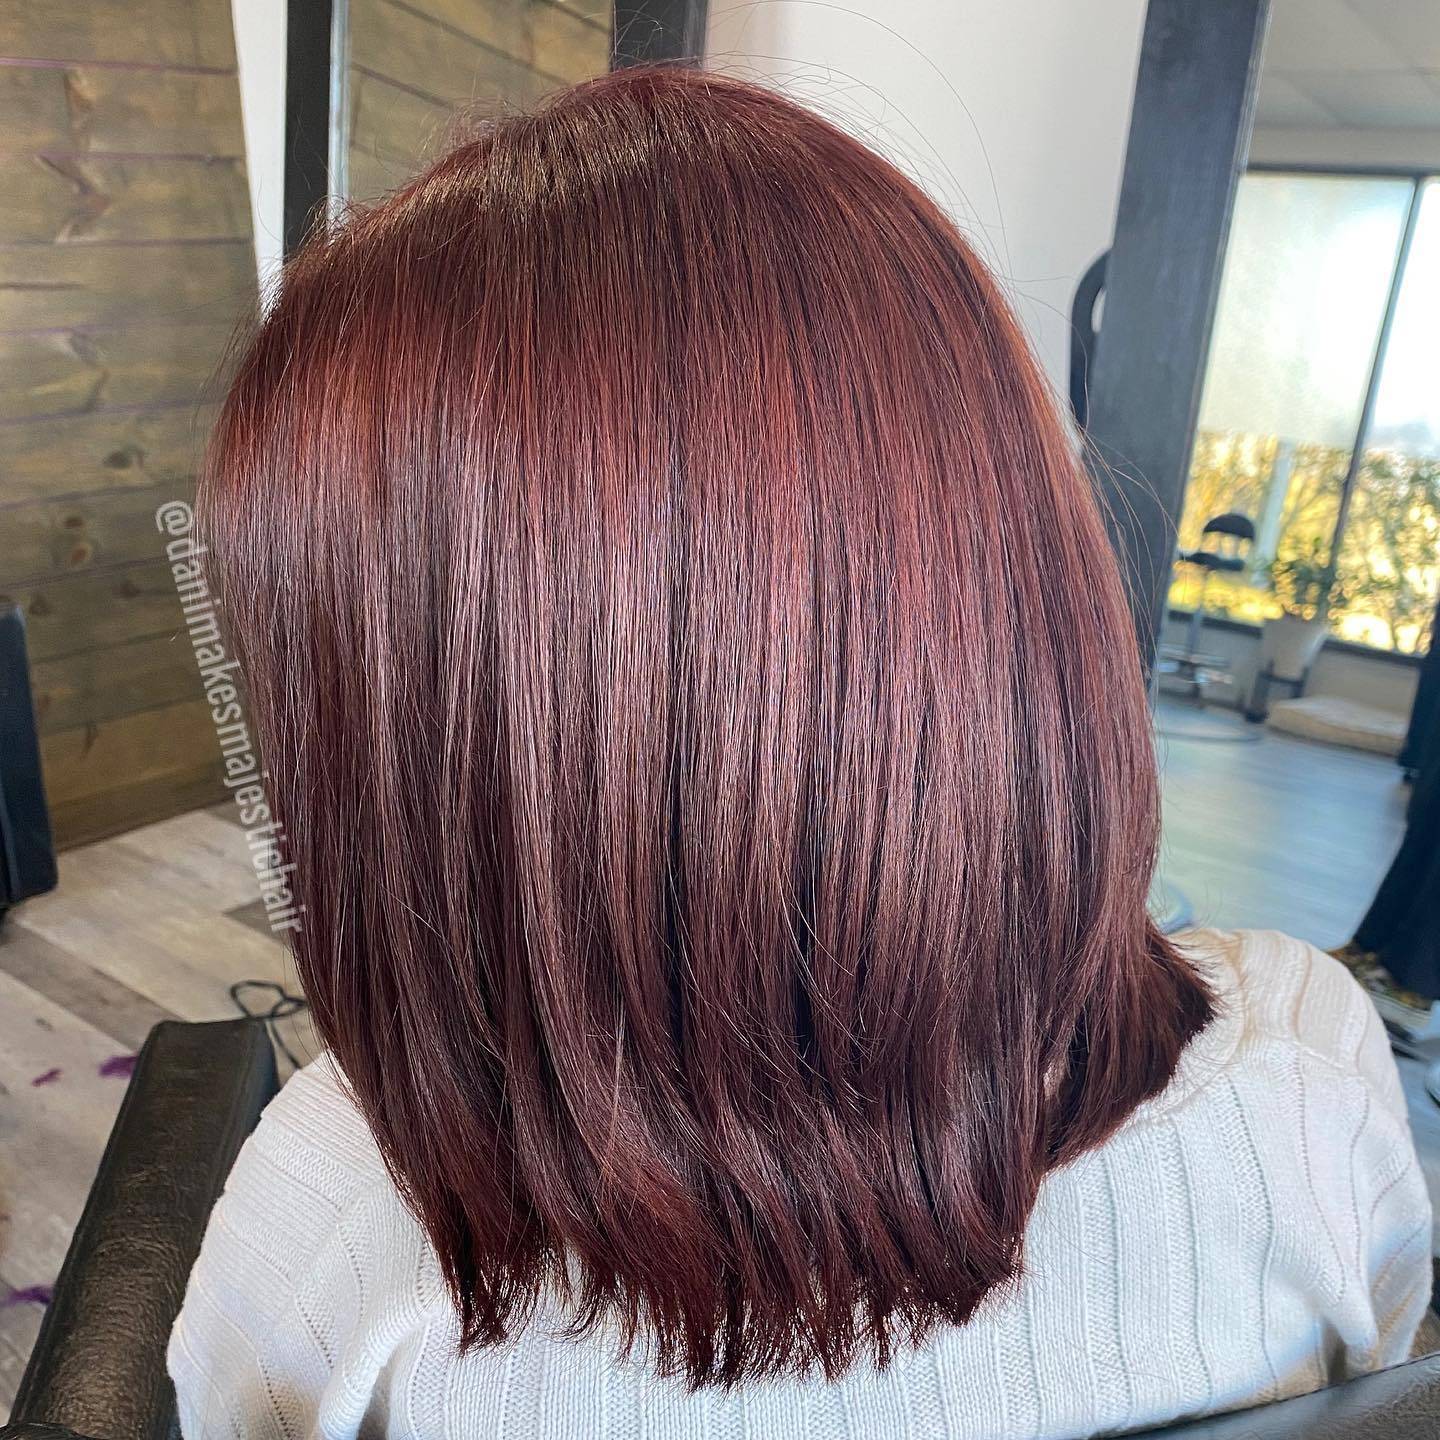 Burgundy hair color 449 burgundy hair color | burgundy hair color for women | burgundy hair color highlights Burgundy Hair Color